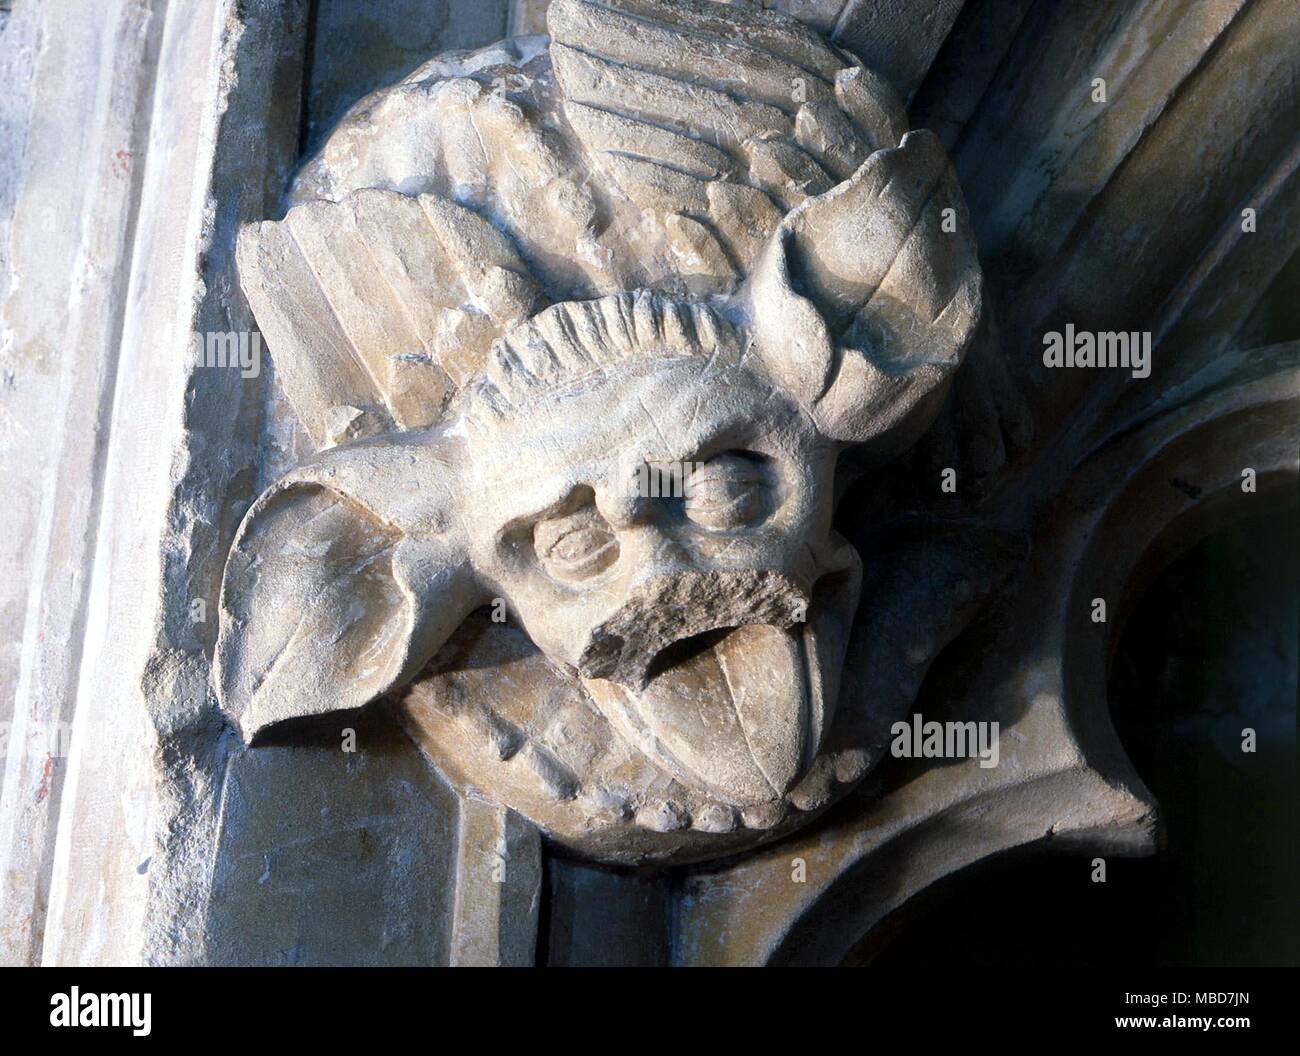 Monster - WINCHELSEA unter den bemerkenswerten mittelalterlichen bildhauerischen Details in Winchelsea Kirche, ist dieses große-eared grinsenden Gesicht, was sicherlich durch die Bilder in der bestiarien Literatur beeinflusst wurde. Stockfoto